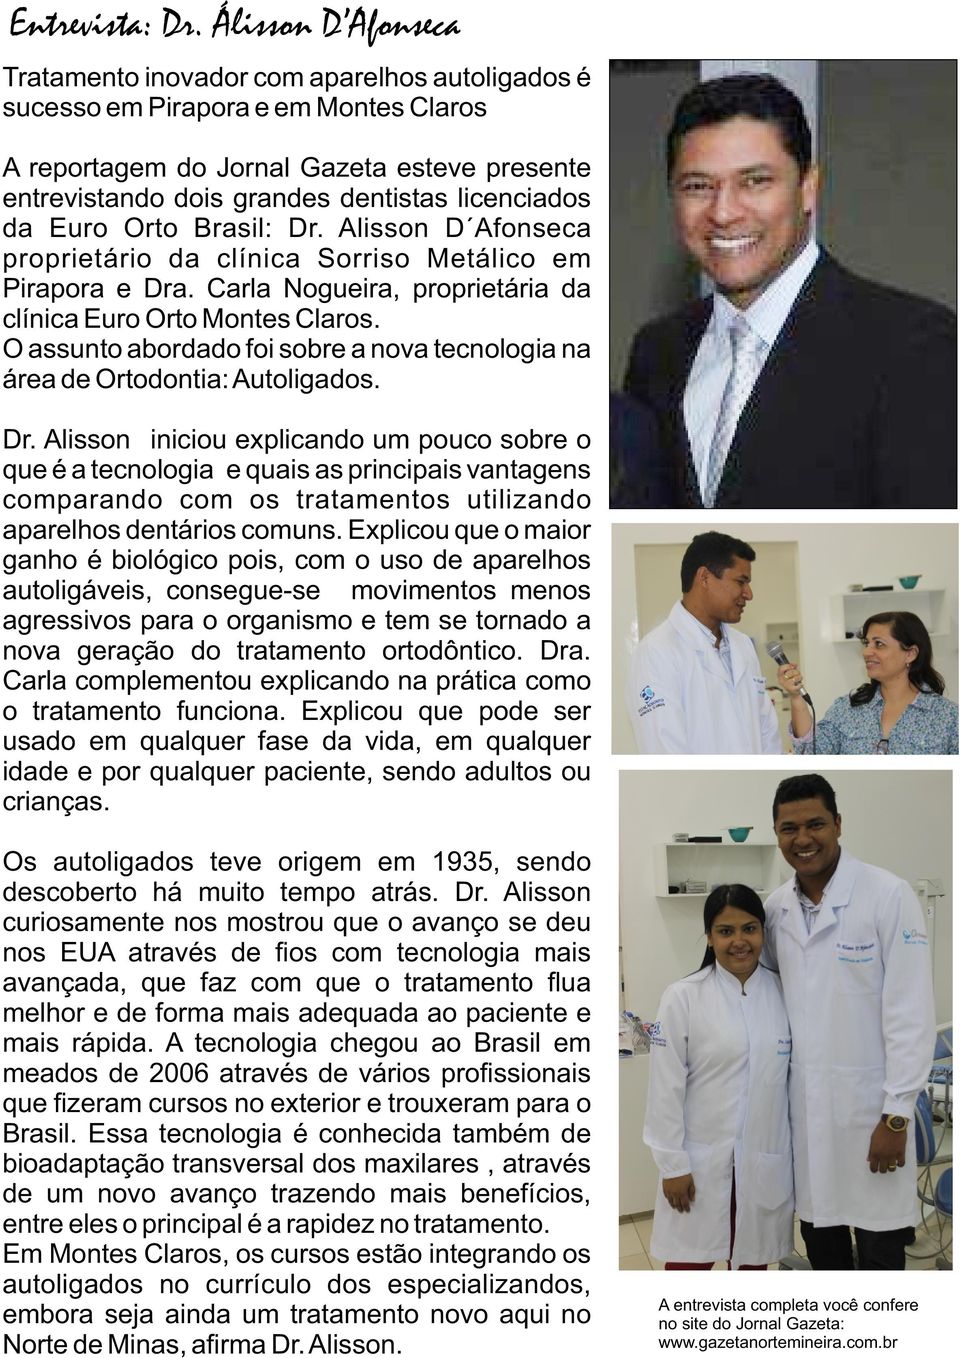 licenciados da Euro Orto Brasil: Dr. Alisson D Afonseca proprietário da clínica Sorriso Metálico em Pirapora e Dra. Carla Nogueira, proprietária da clínica Euro Orto Montes Claros.